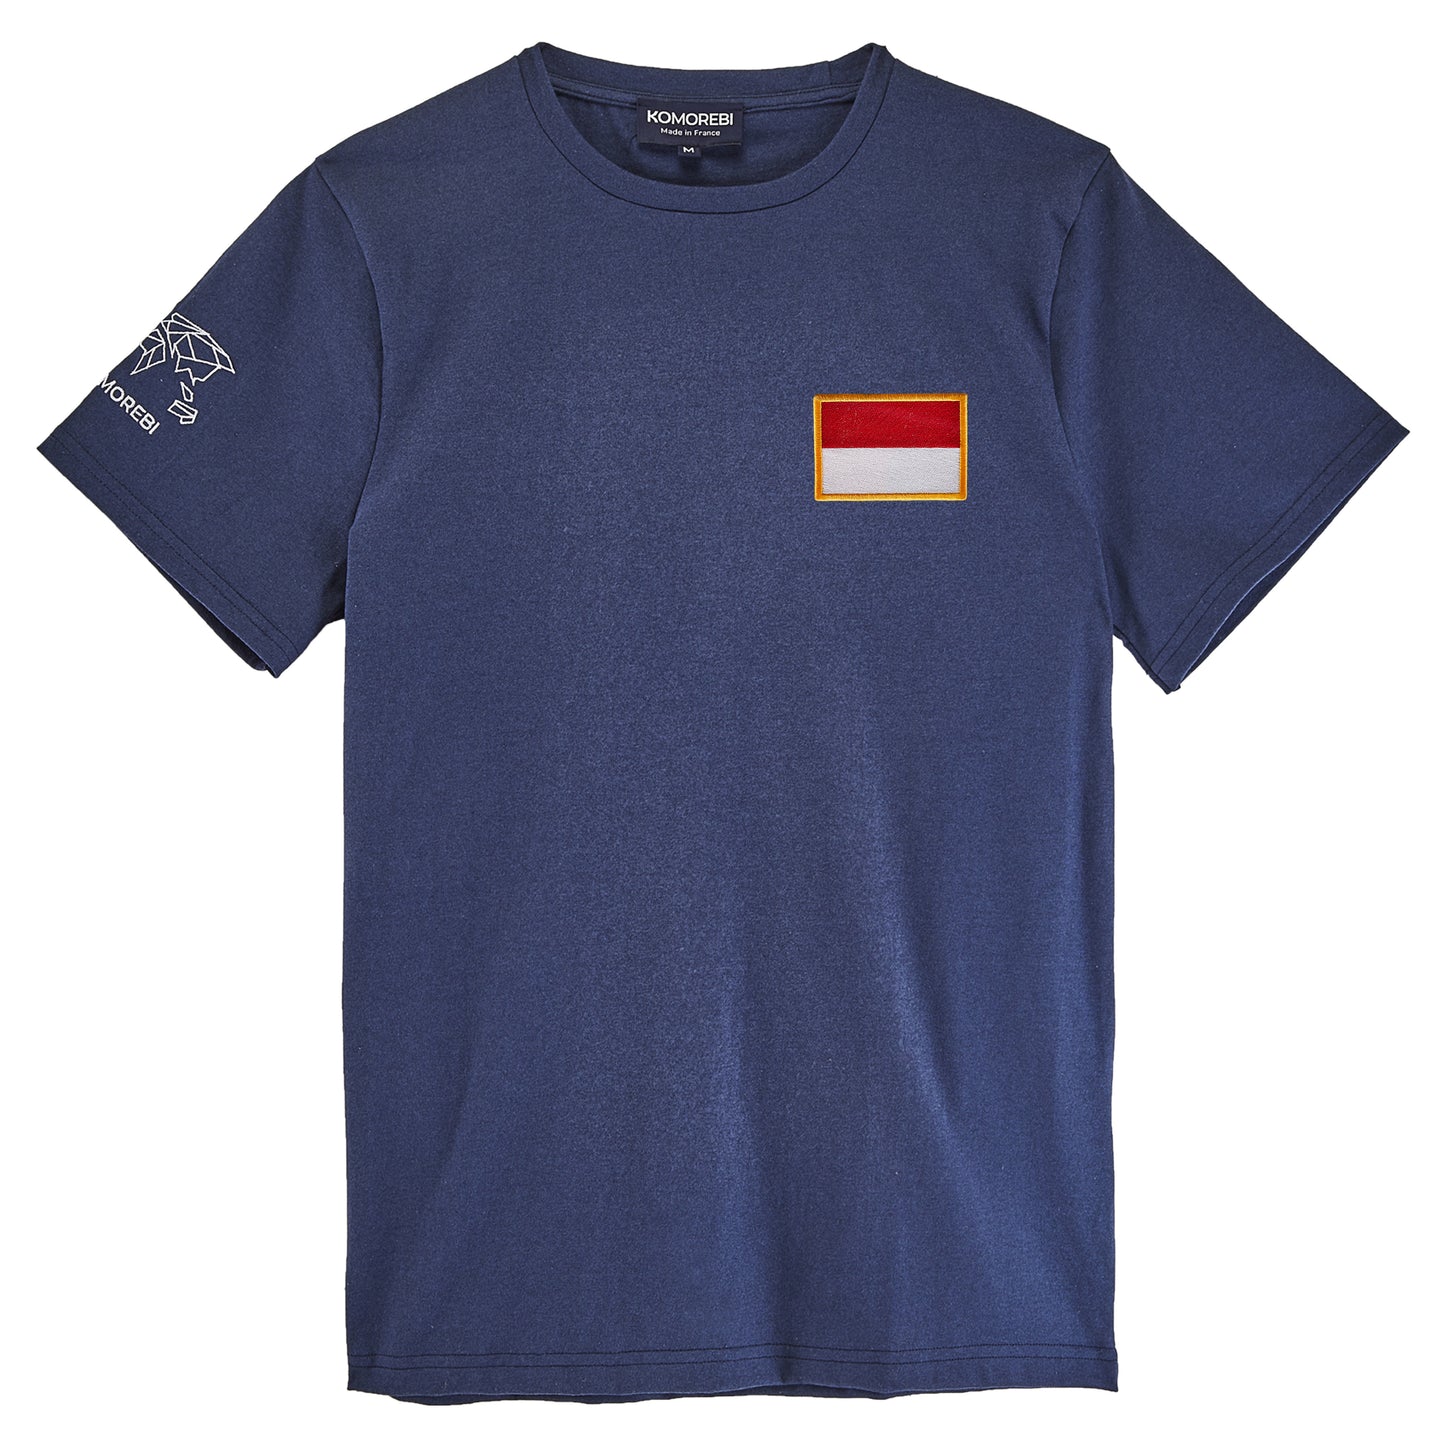 Monaco - flag t-shirt